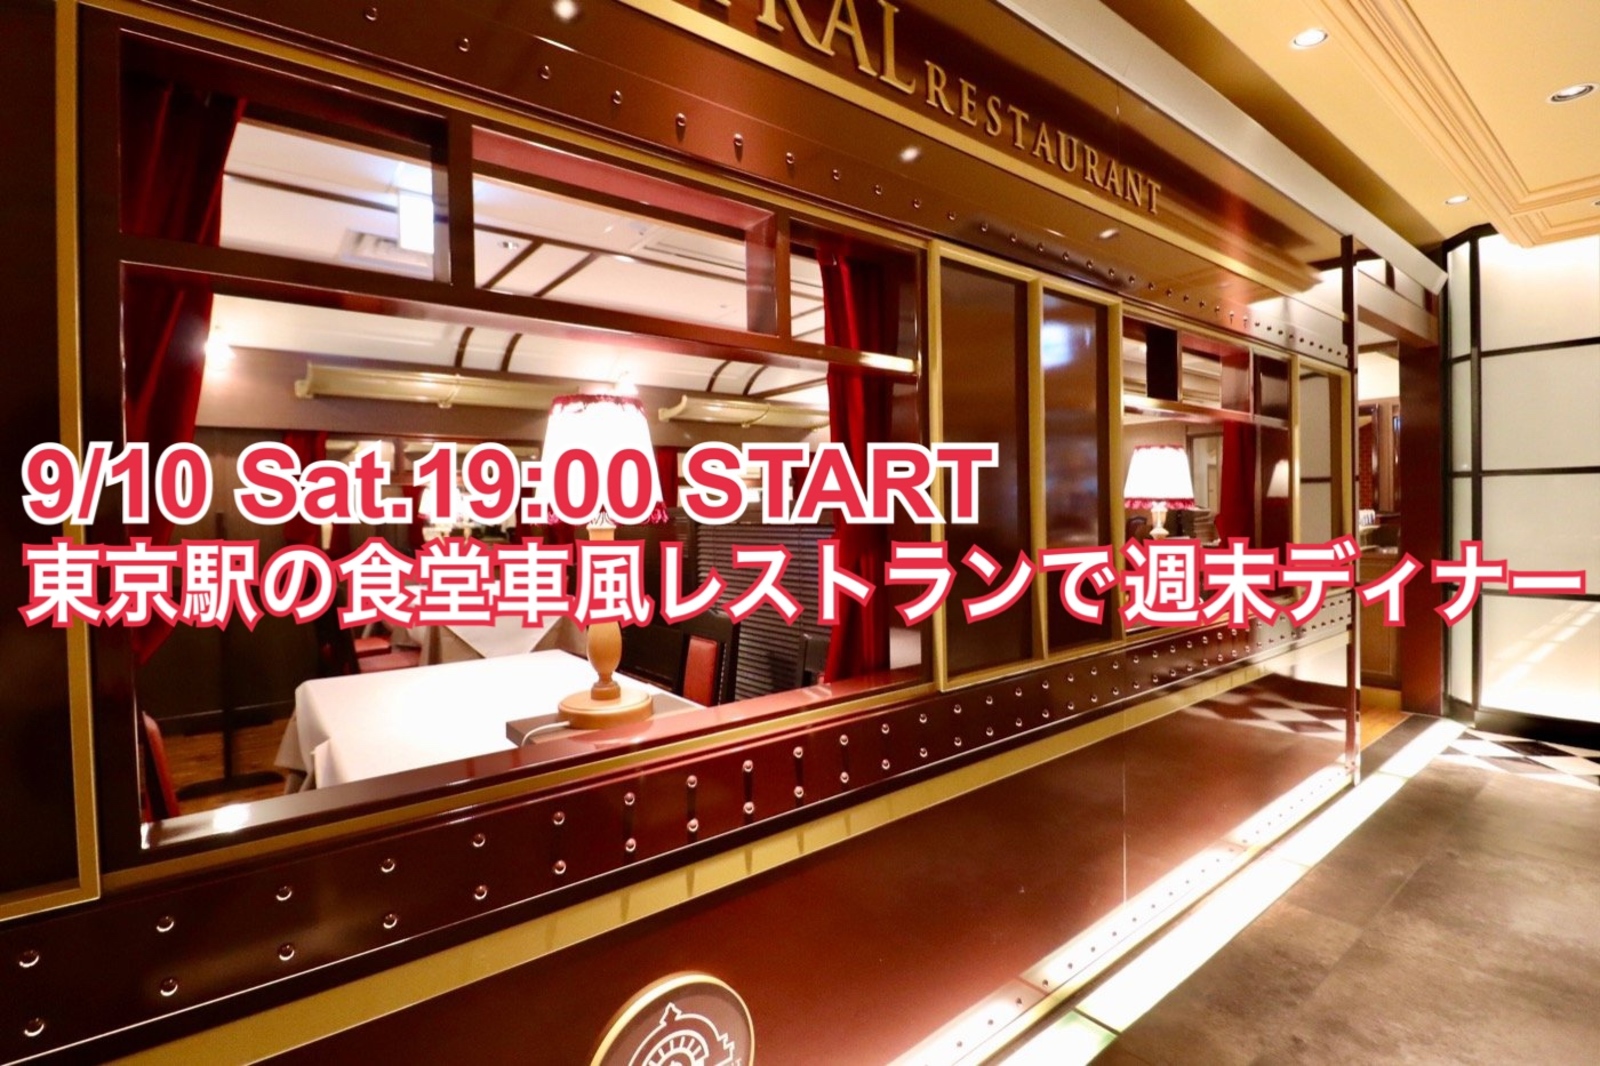 土曜日の夜🌃食堂車風レストランで東京駅のプレミアムな洋食を食べよう